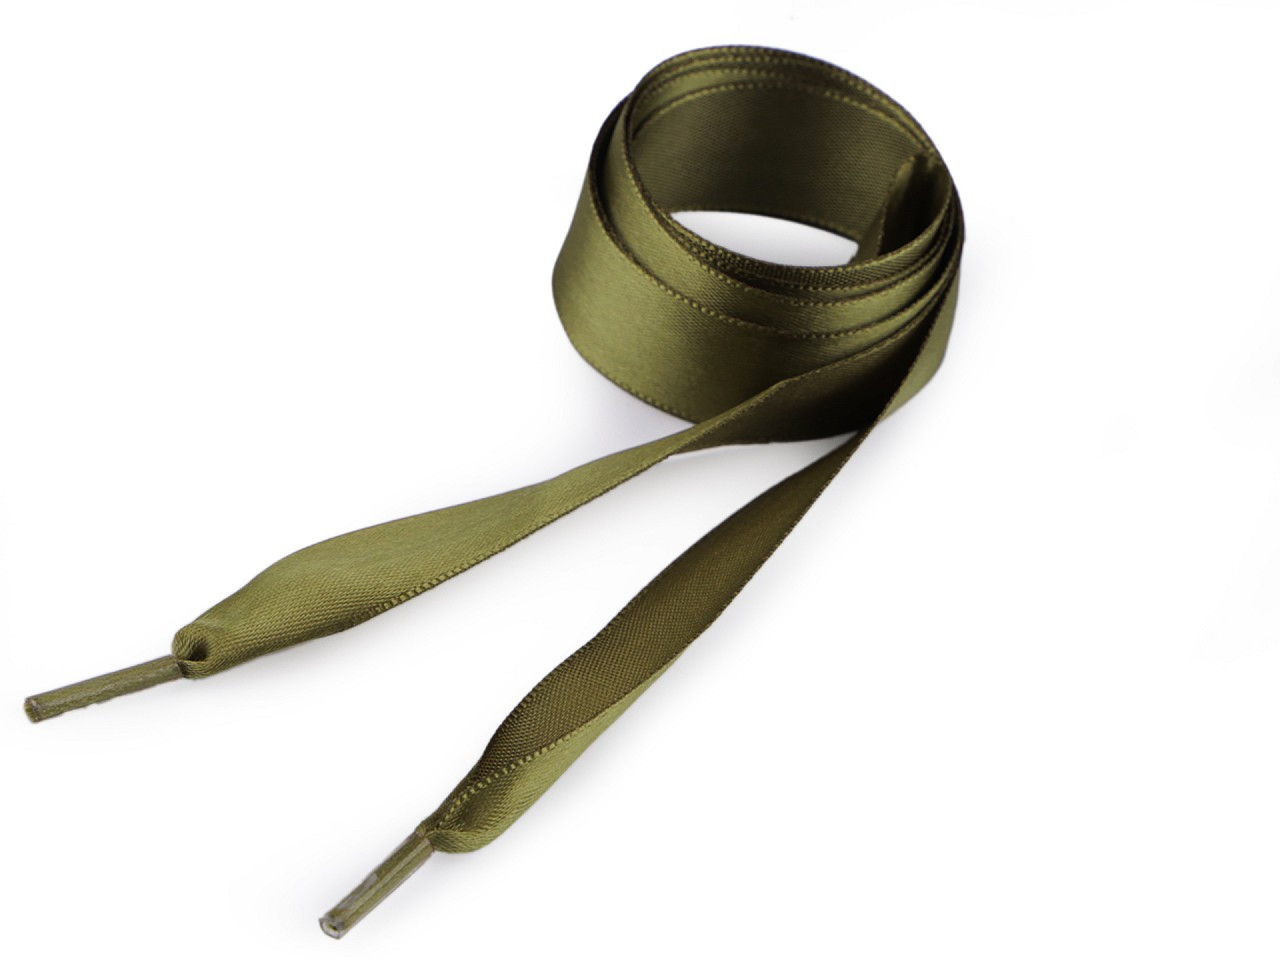 Saténové tkaničky do bot, tenisek a mikin délka 110 cm, barva 17 zelená khaki stř.